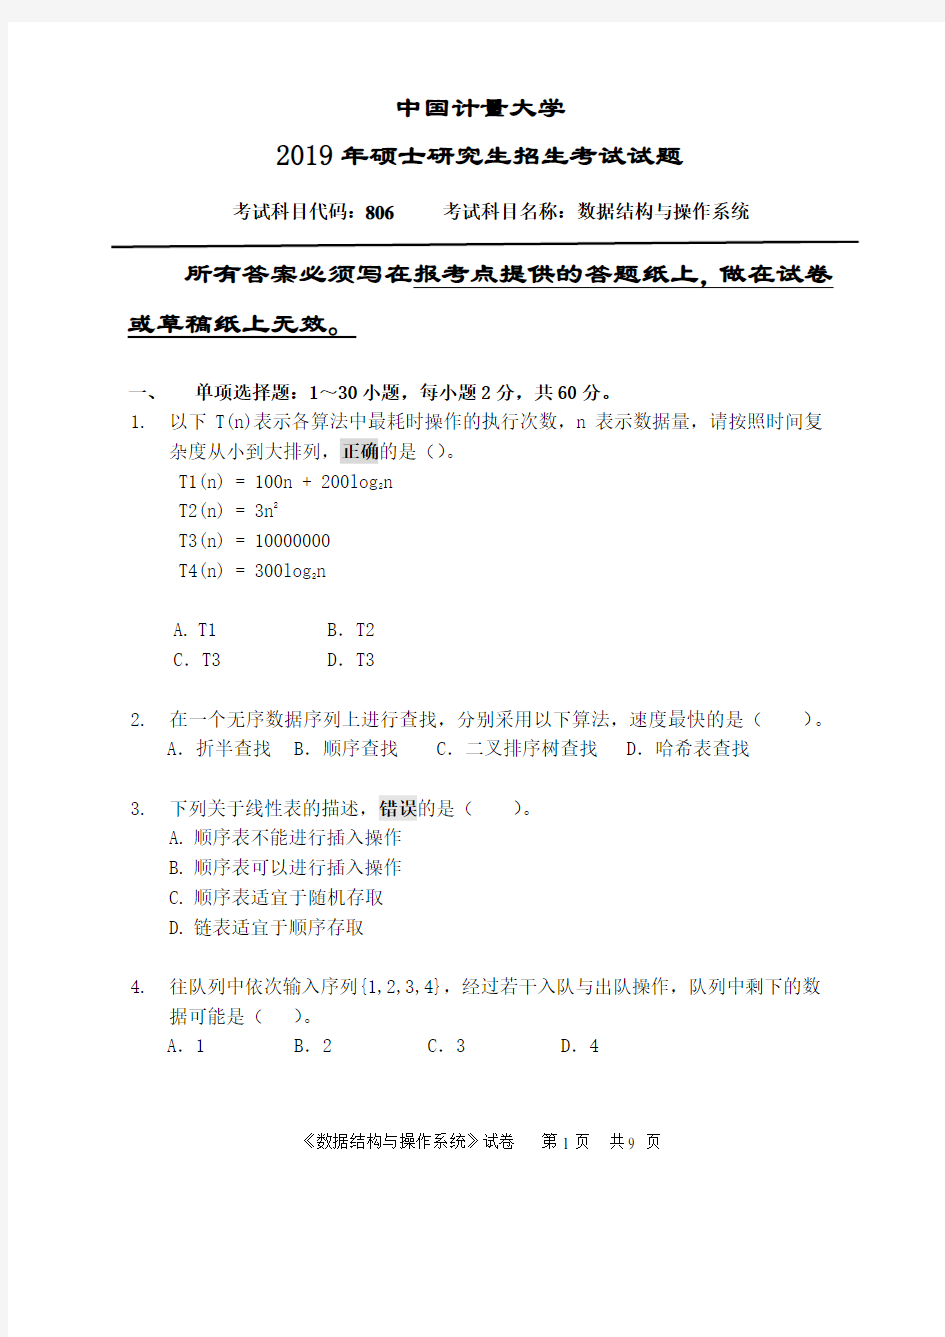 中国计量大学2019年《806数据结构与操作系统》考研专业课真题试卷